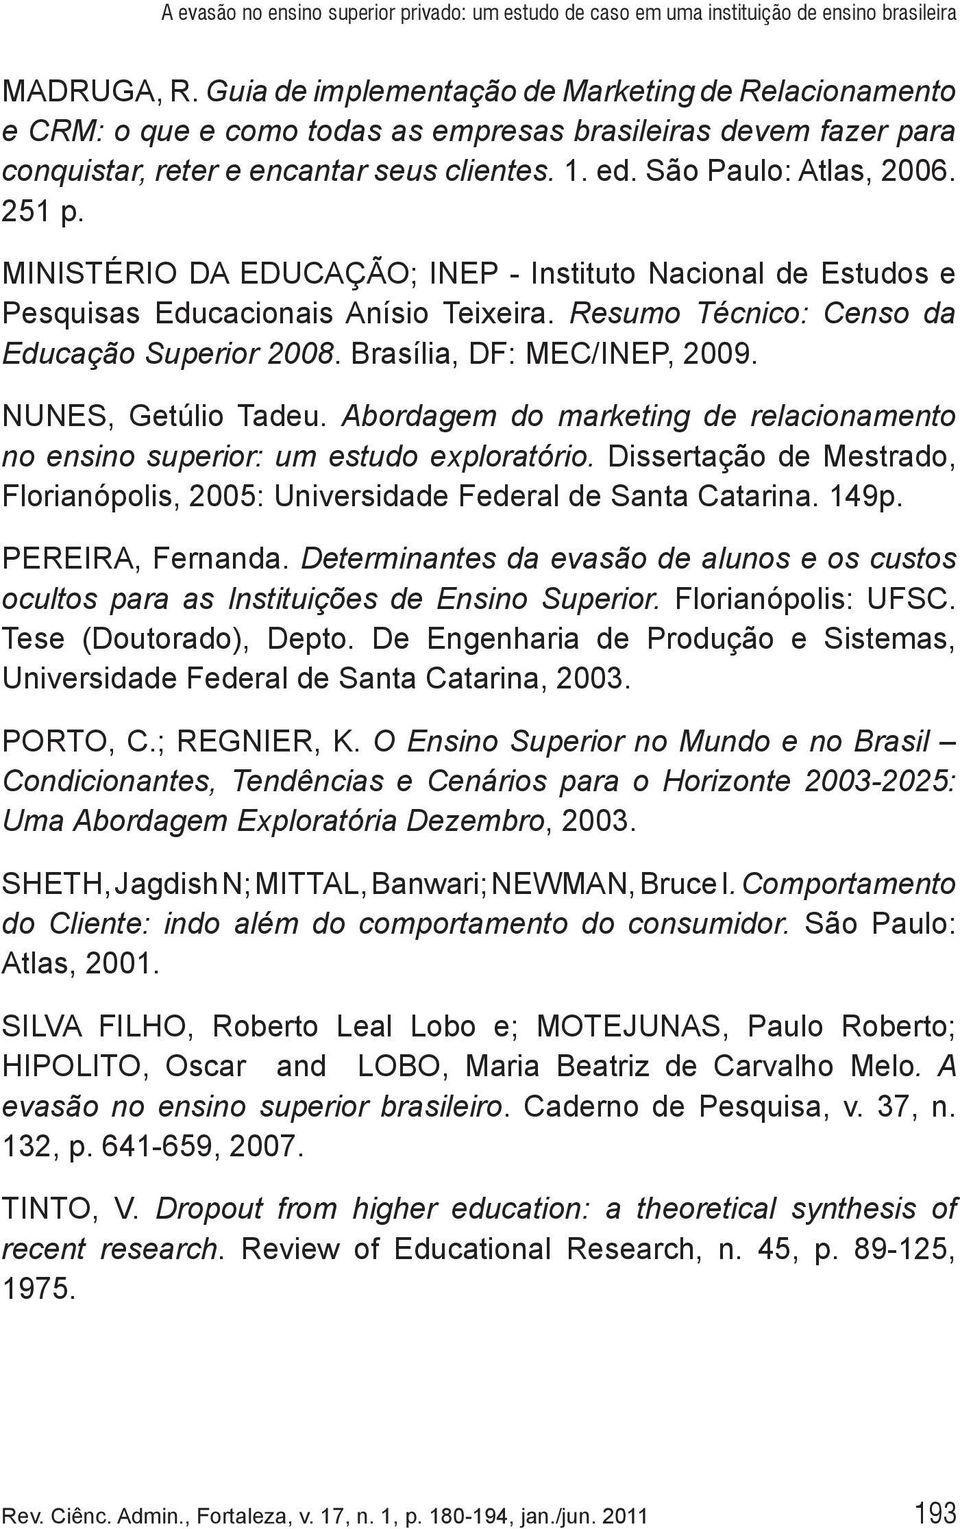 251 p. MINISTÉRIO DA EDUCAÇÃO; INEP - Instituto Nacional de Estudos e Pesquisas Educacionais Anísio Teixeira. Resumo Técnico: Censo da Educação Superior 2008. Brasília, DF: MEC/INEP, 2009.